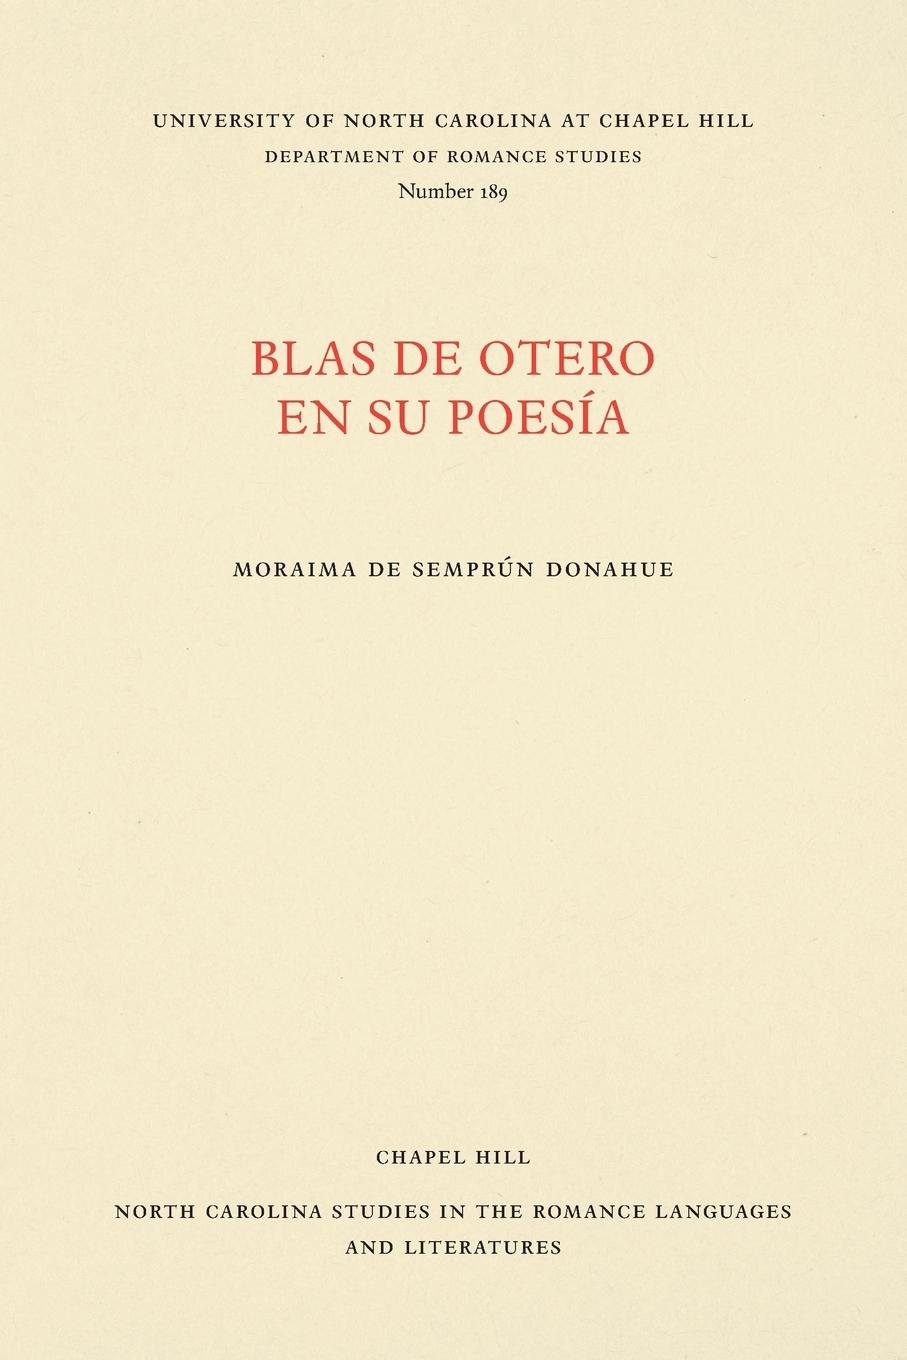 Blas de Otero en su poesía - Donahue, Moraima de Semprún